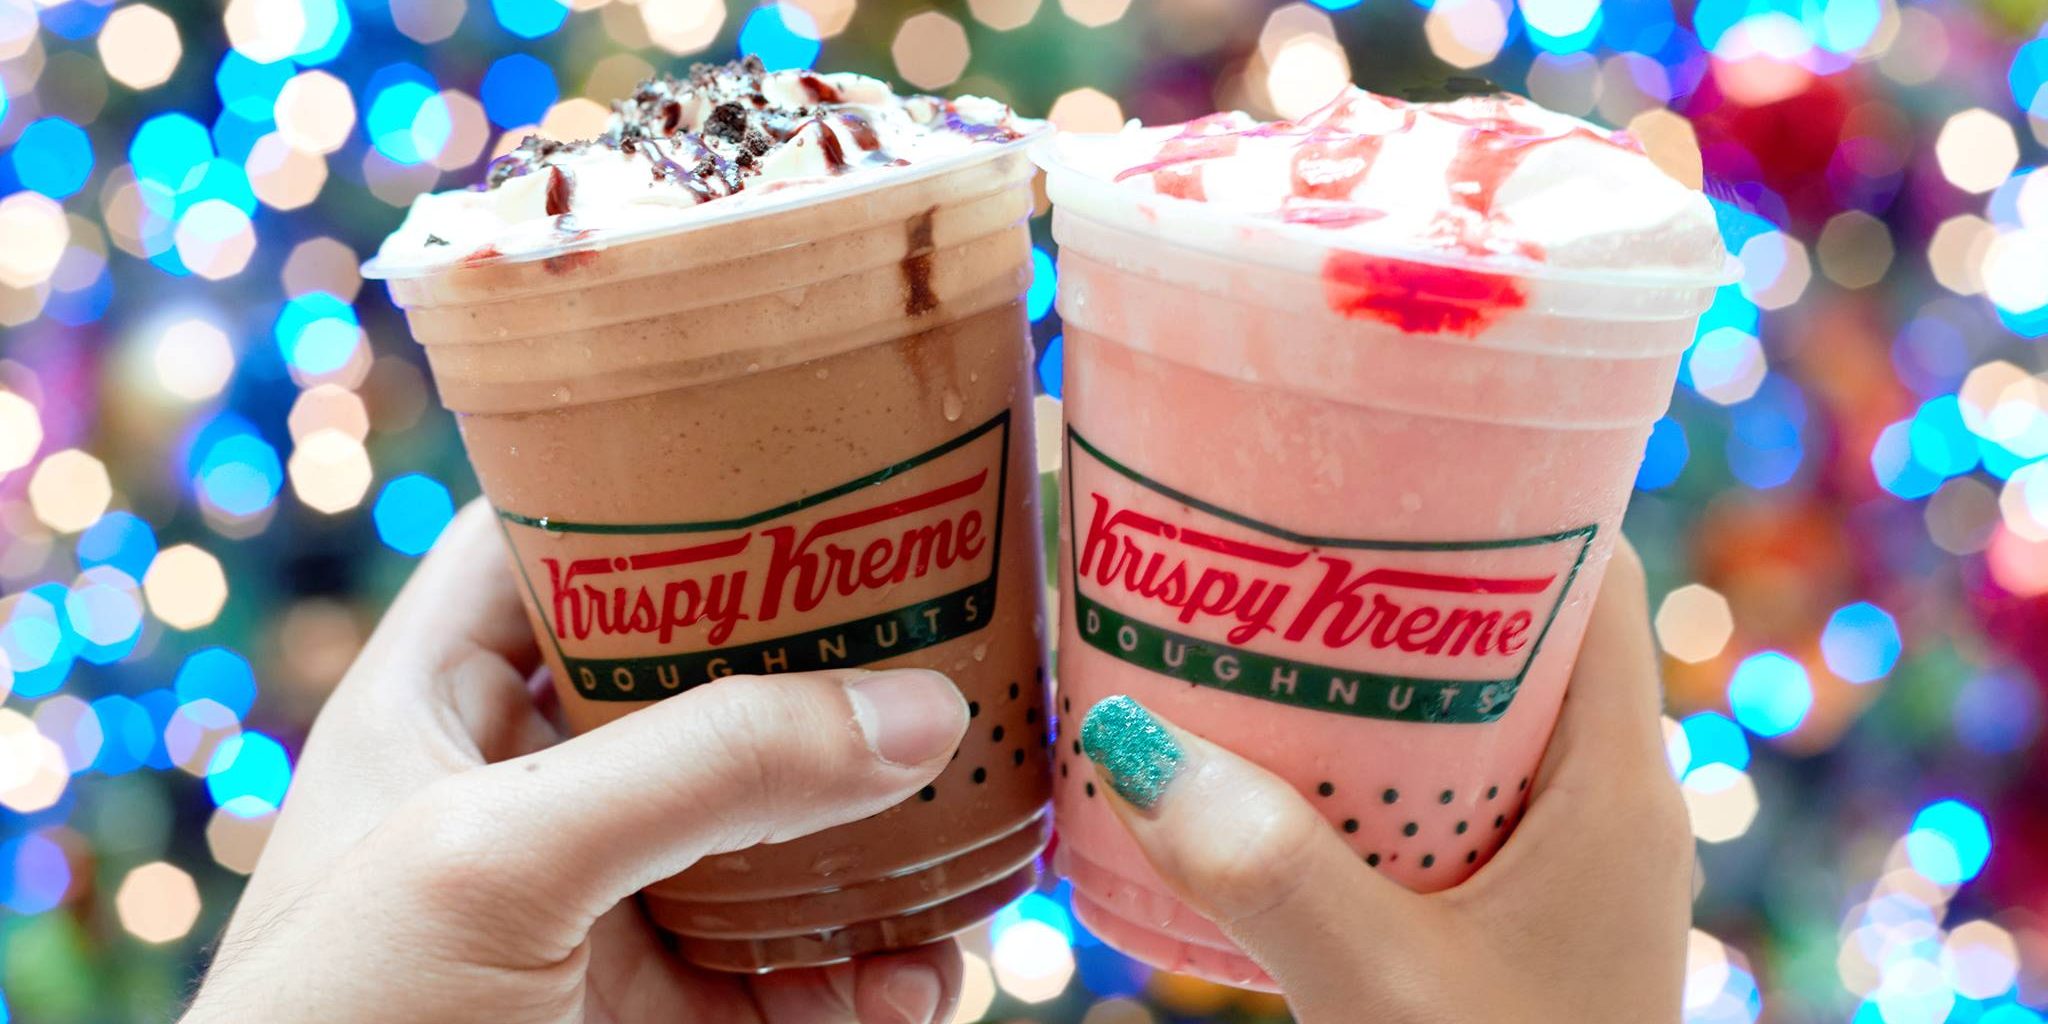 Krispy Kreme Singapore Buy 1 Get 1 50% Off Frozze Promotion ends 25 Dec 2016